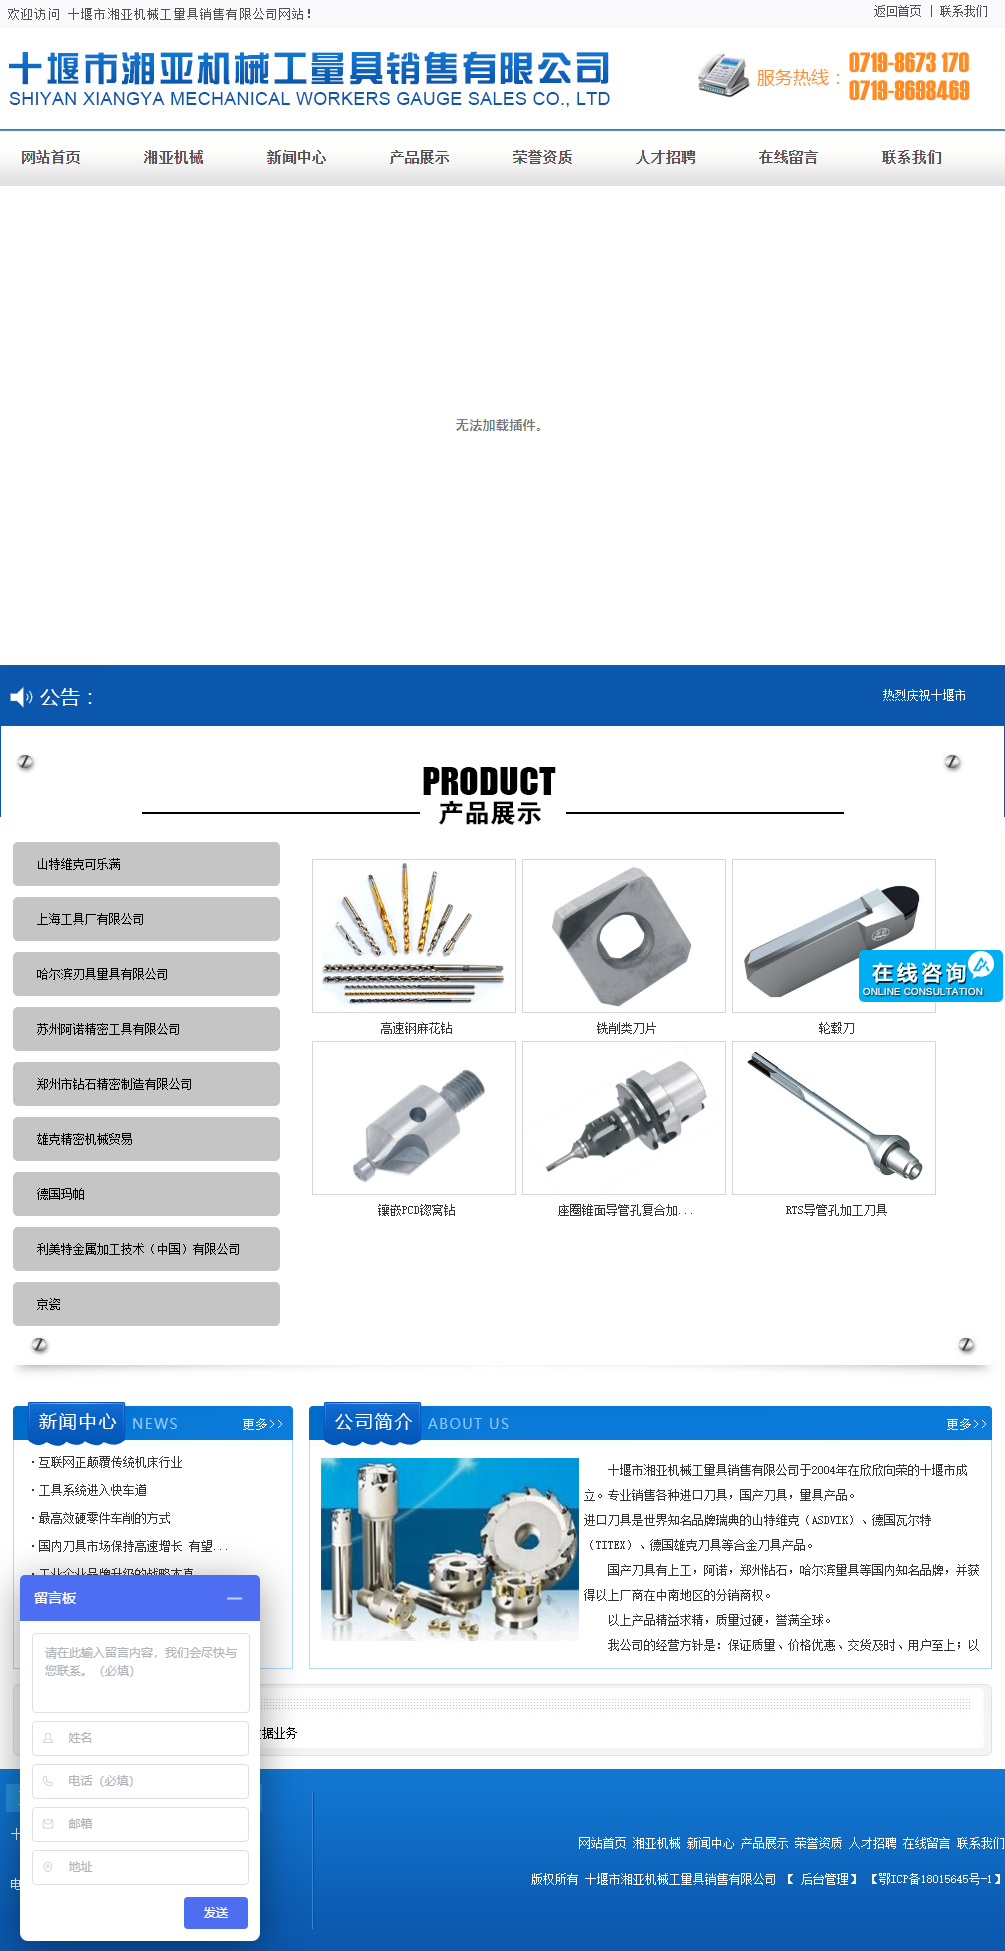 十堰市湘亚机械工量具销售有限公司网站案例